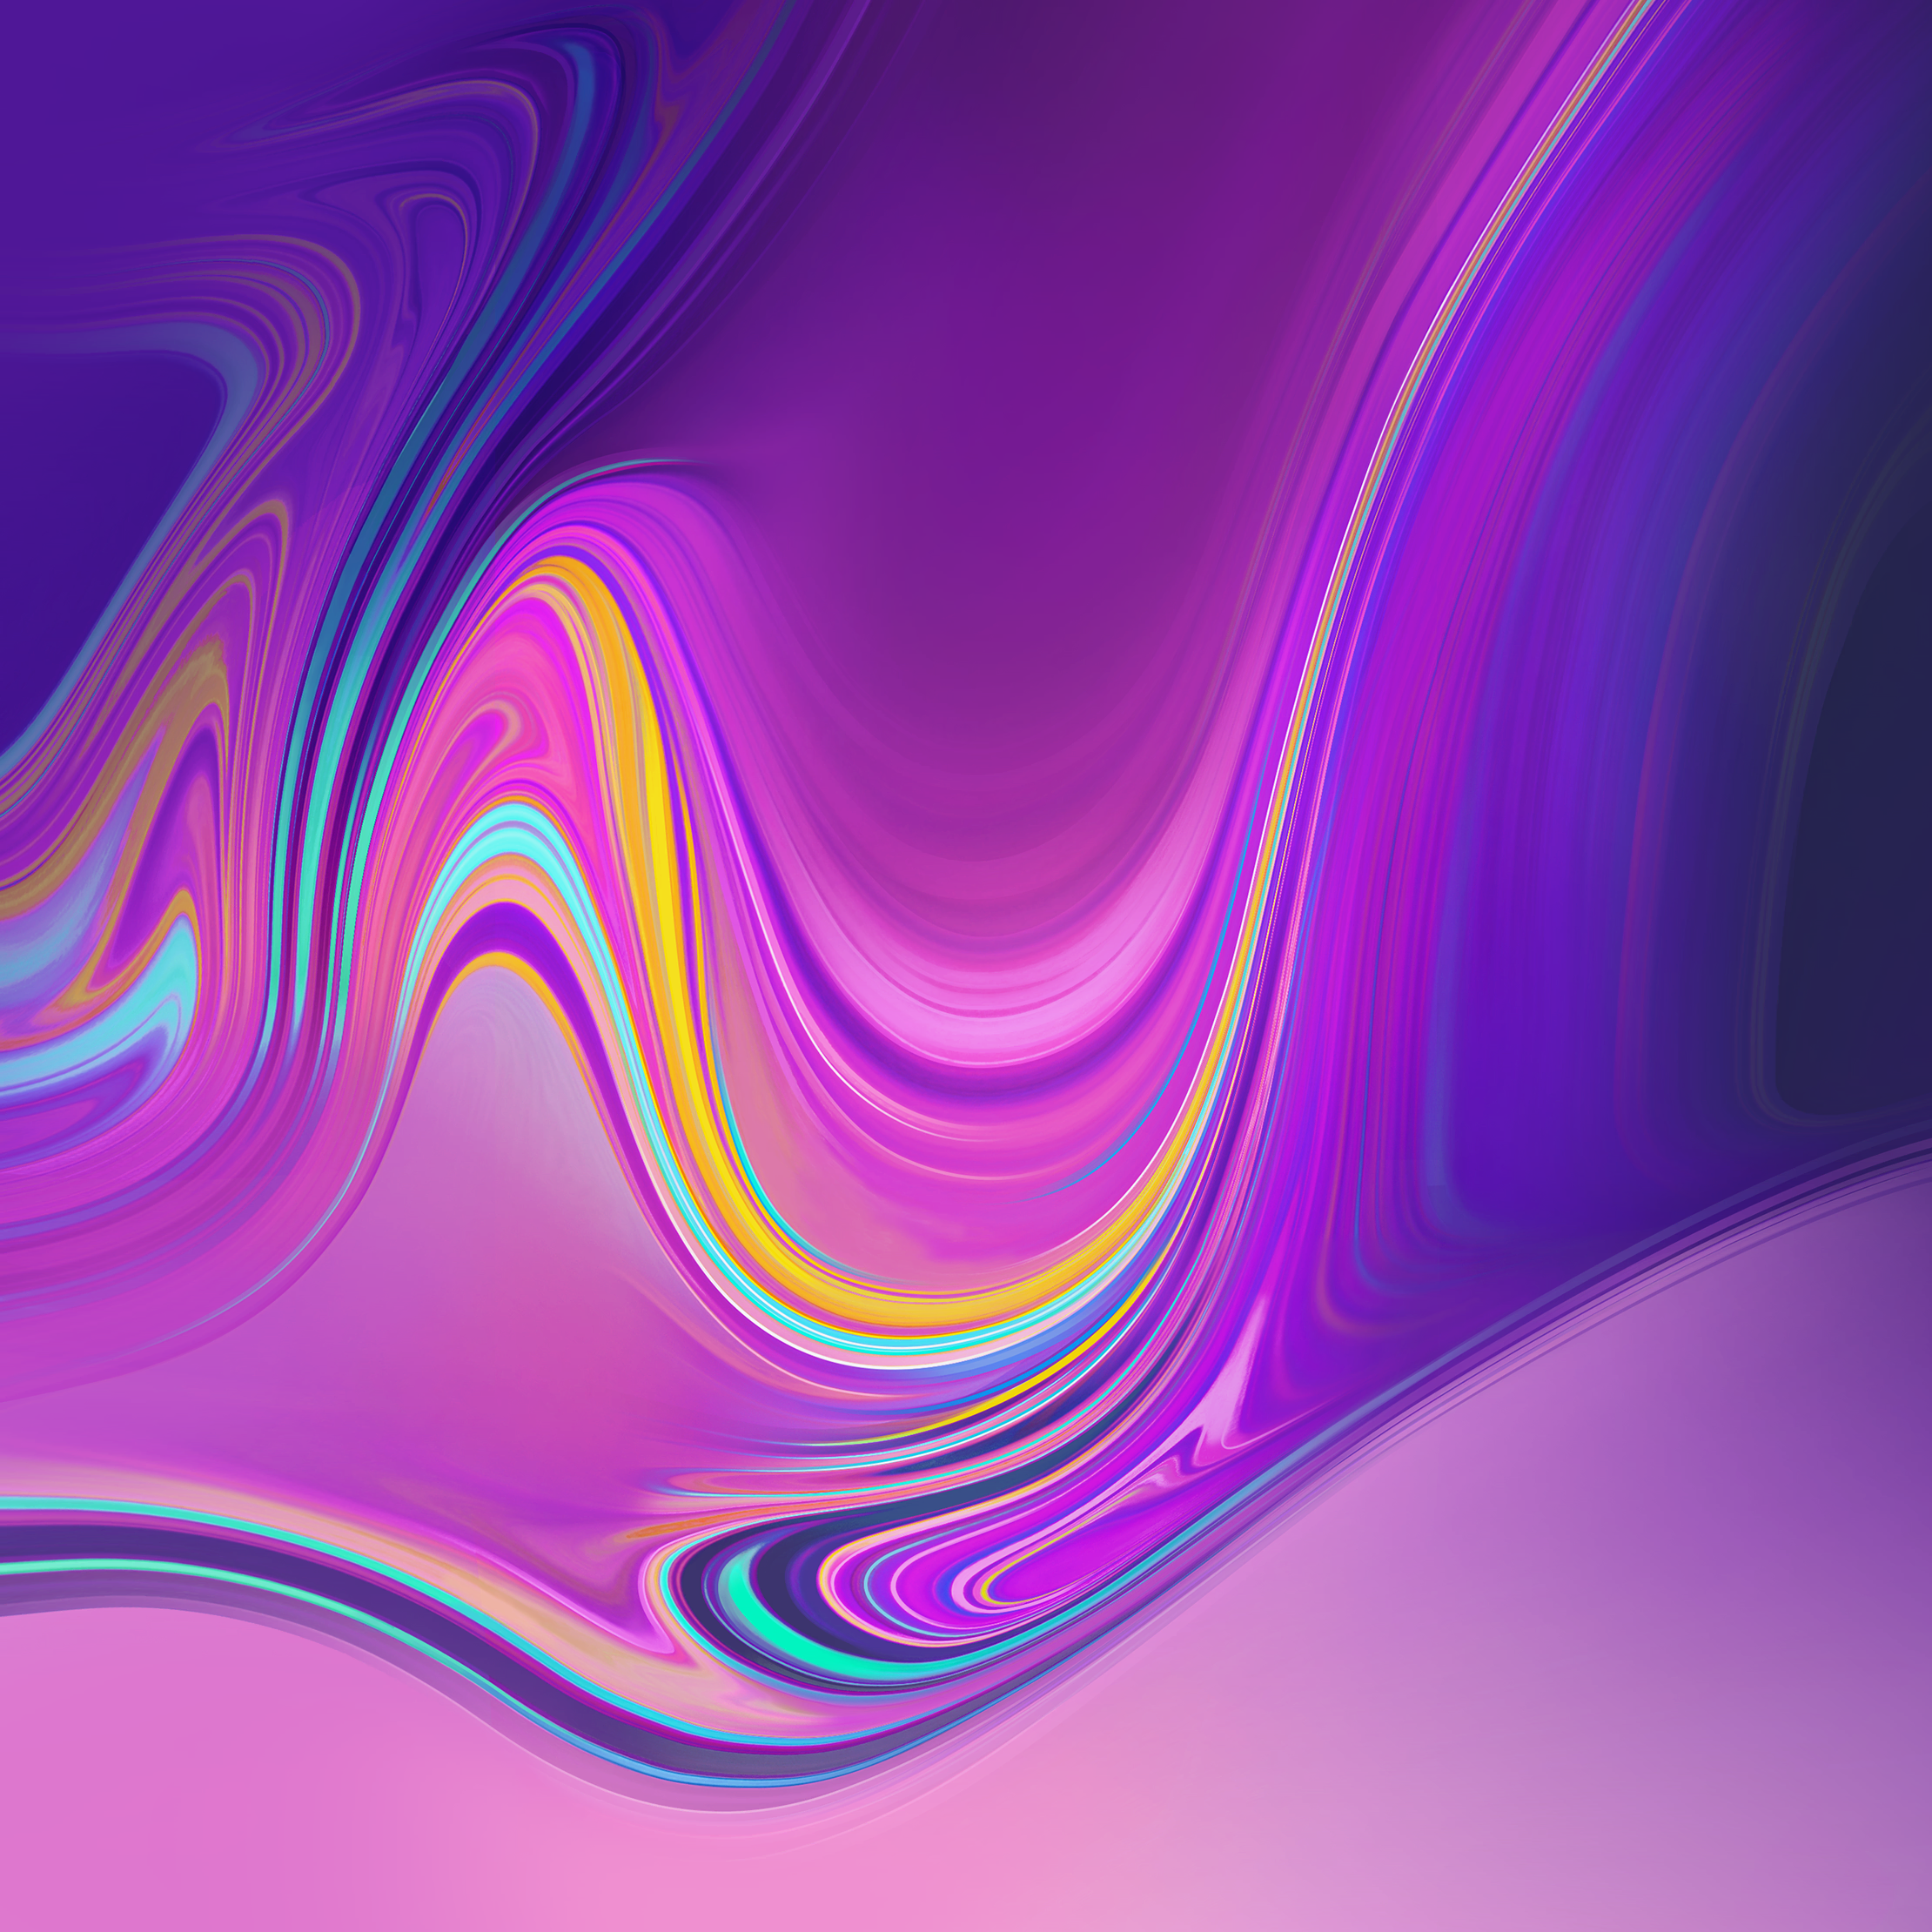 samsung a7 fondo de pantalla,púrpura,azul,violeta,arte fractal,rosado